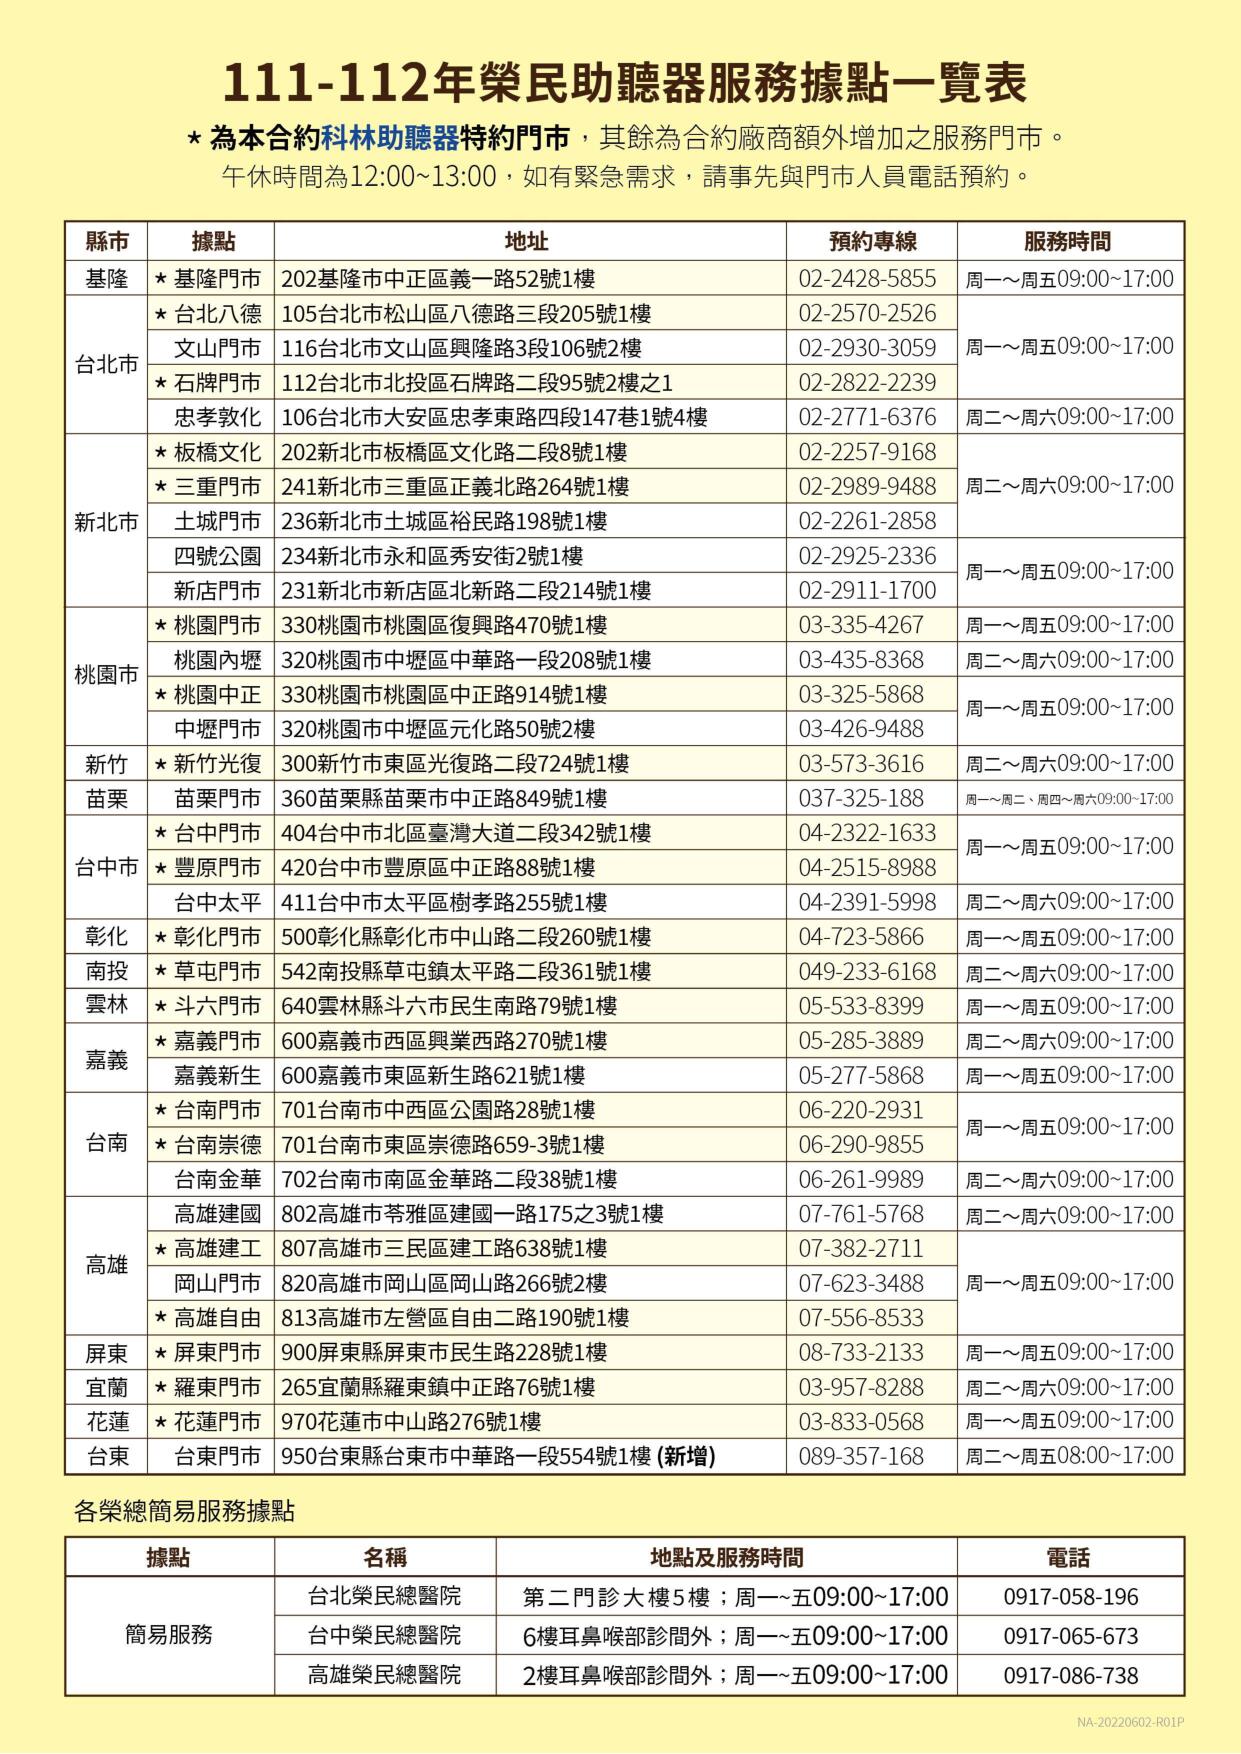 「111-112年全數位助聽器」合約廠商新增臺東服務據點